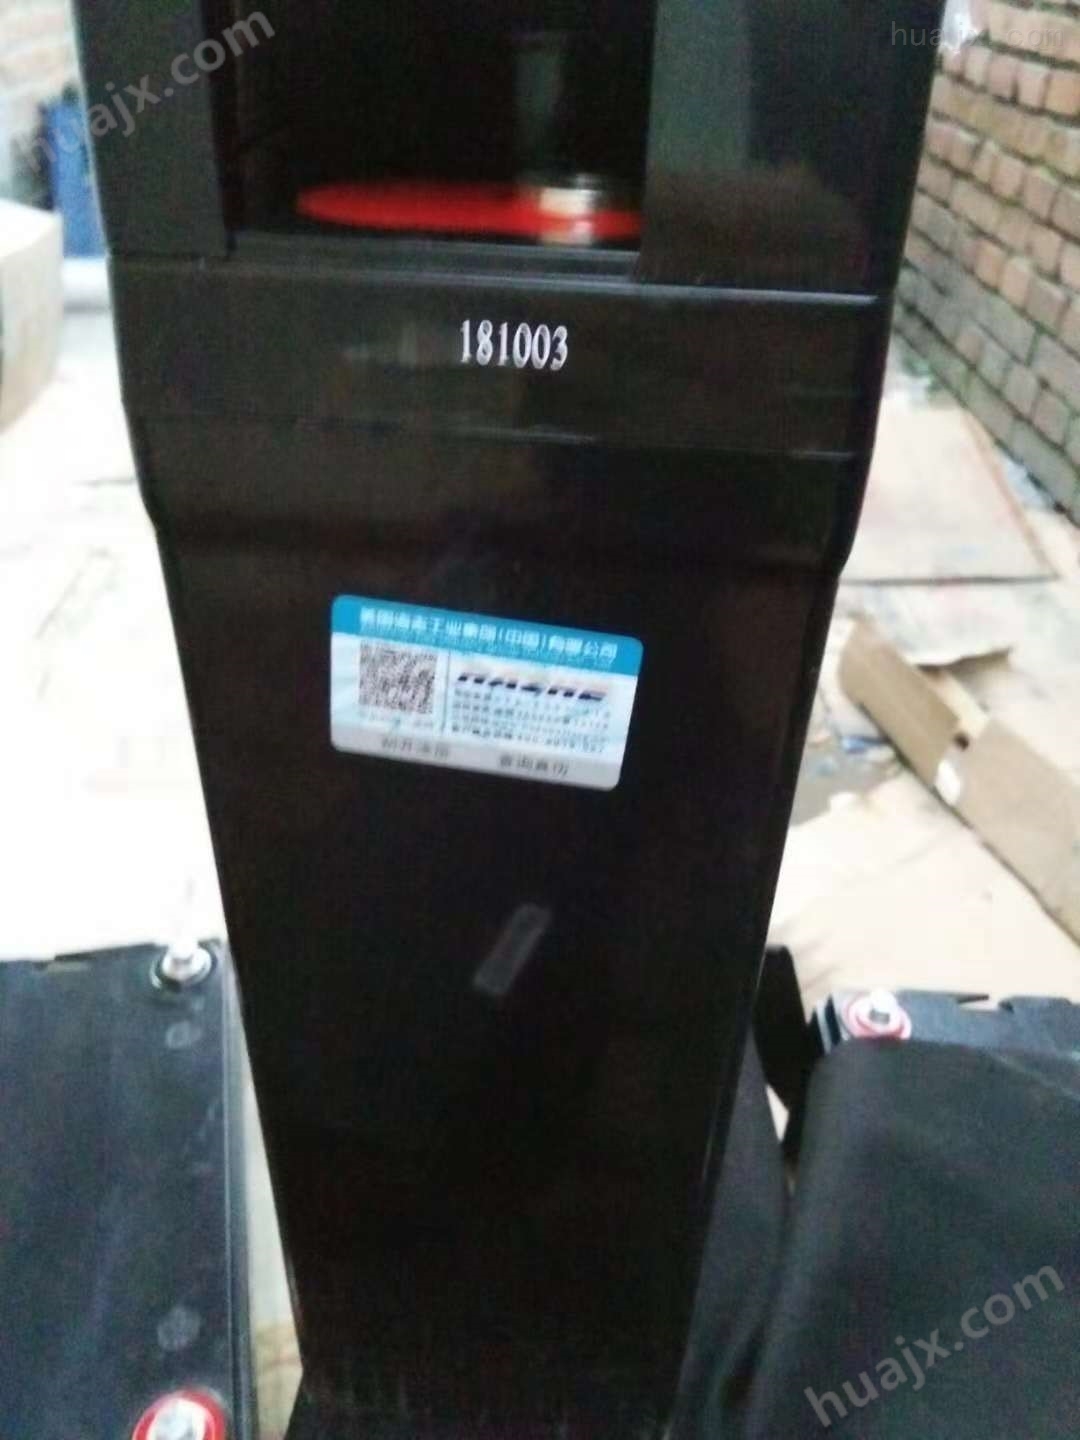 海志蓄电池HZY2-2500|2V2500Ah北京办事处